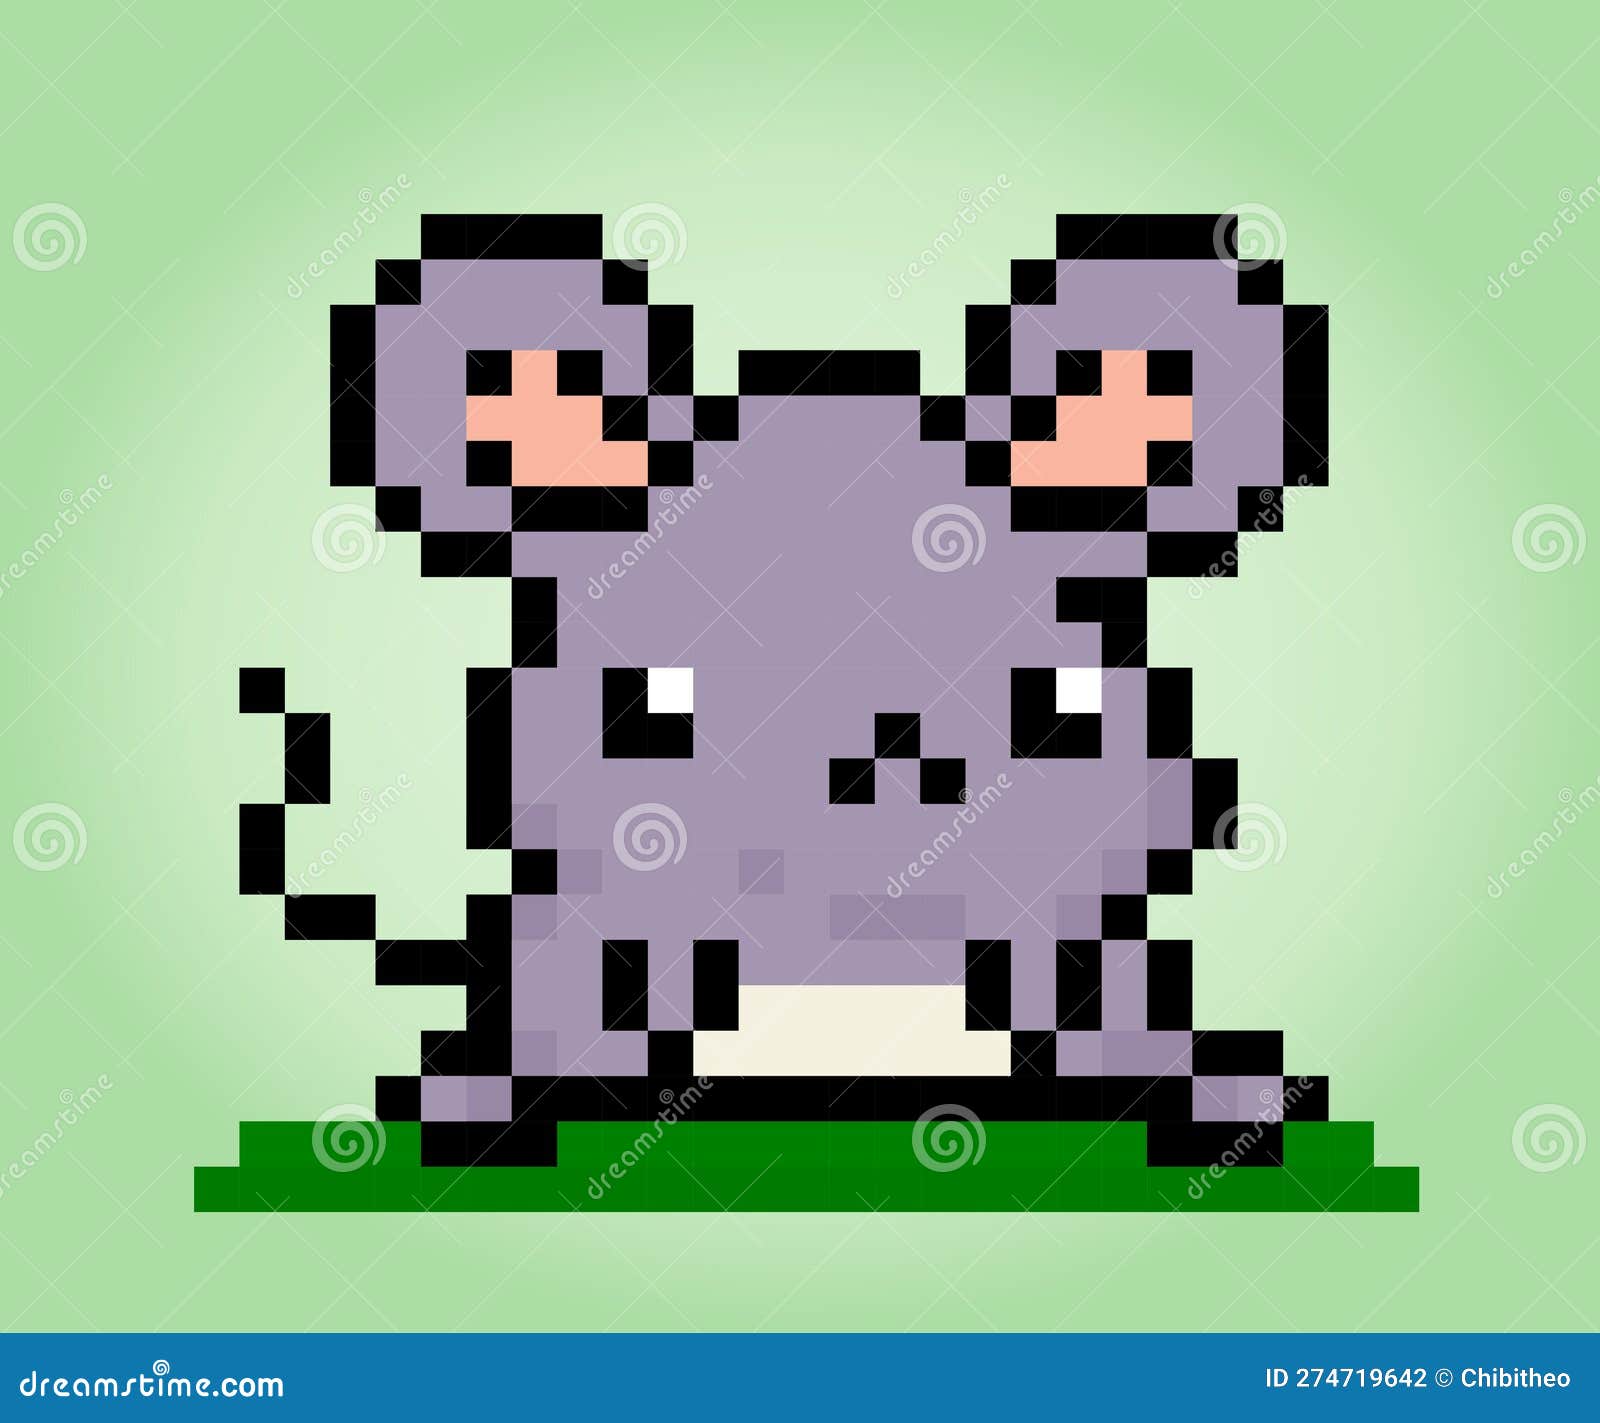 Pixel 8 bit cat animal para ativos de jogo em ilustração vetorial